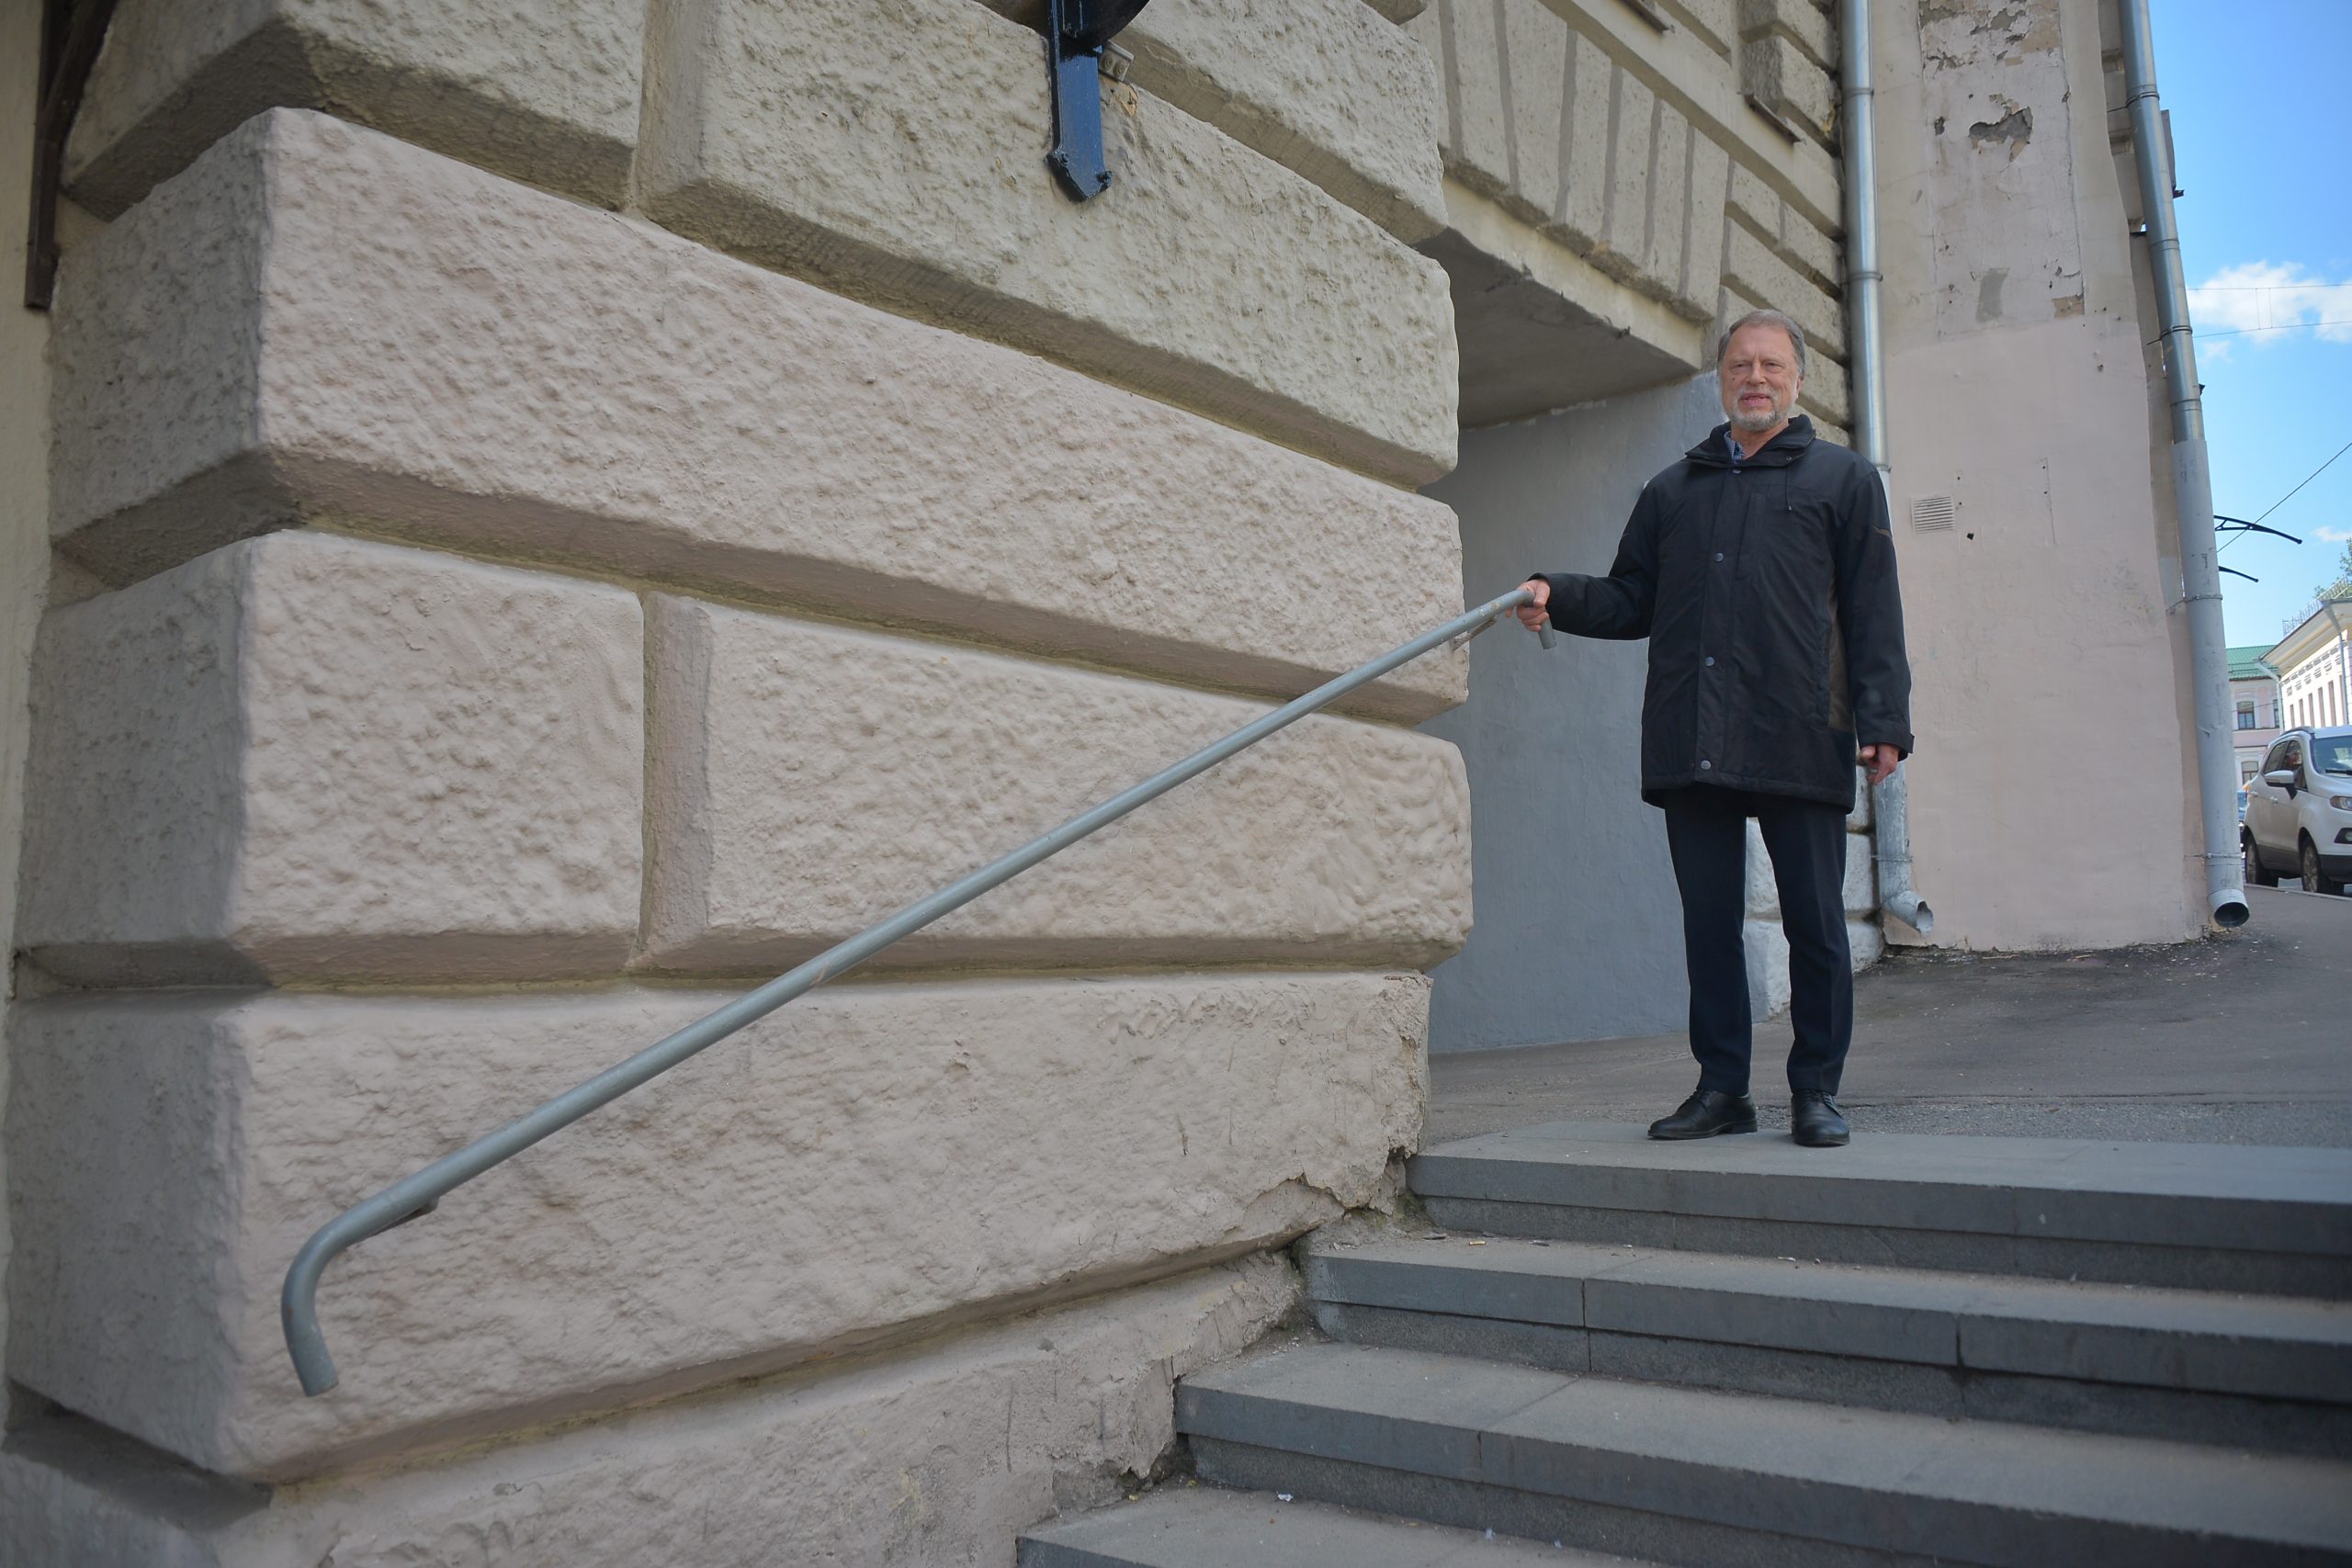 Георгий Саначин рад появлению поручней: теперь по лестнице ходить не страшно. Фото: Анна Малакмадзе, «Вечерняя Москва»